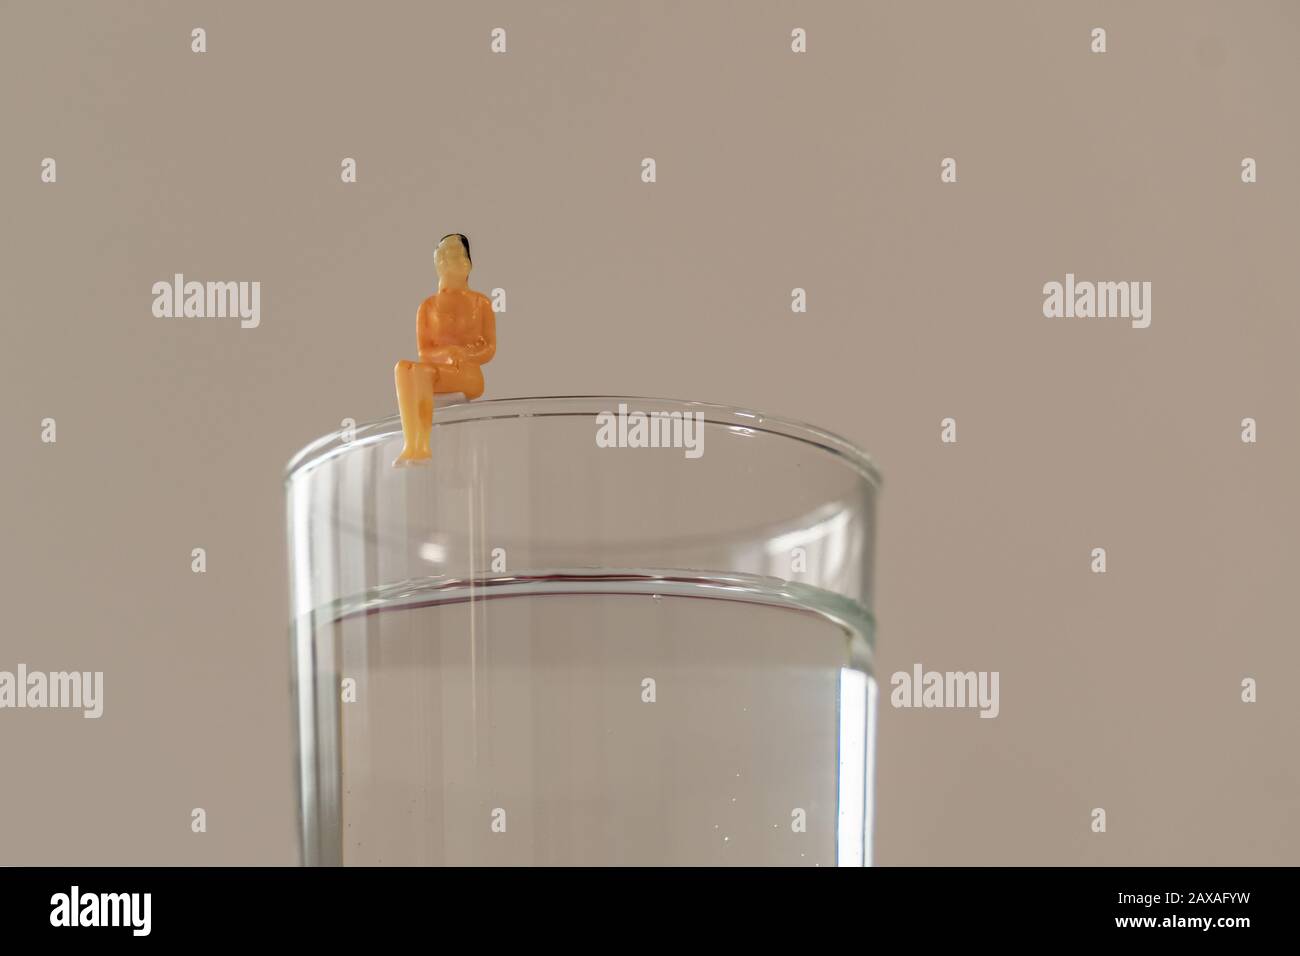 Miniaturfigur der Frau, die auf dem Glas Wasser sitzt. Geringe Tiefe des Feldhintergrunds. Gesundheitswesen, gesunder Lebensstil und schlankes Konzept. Stockfoto